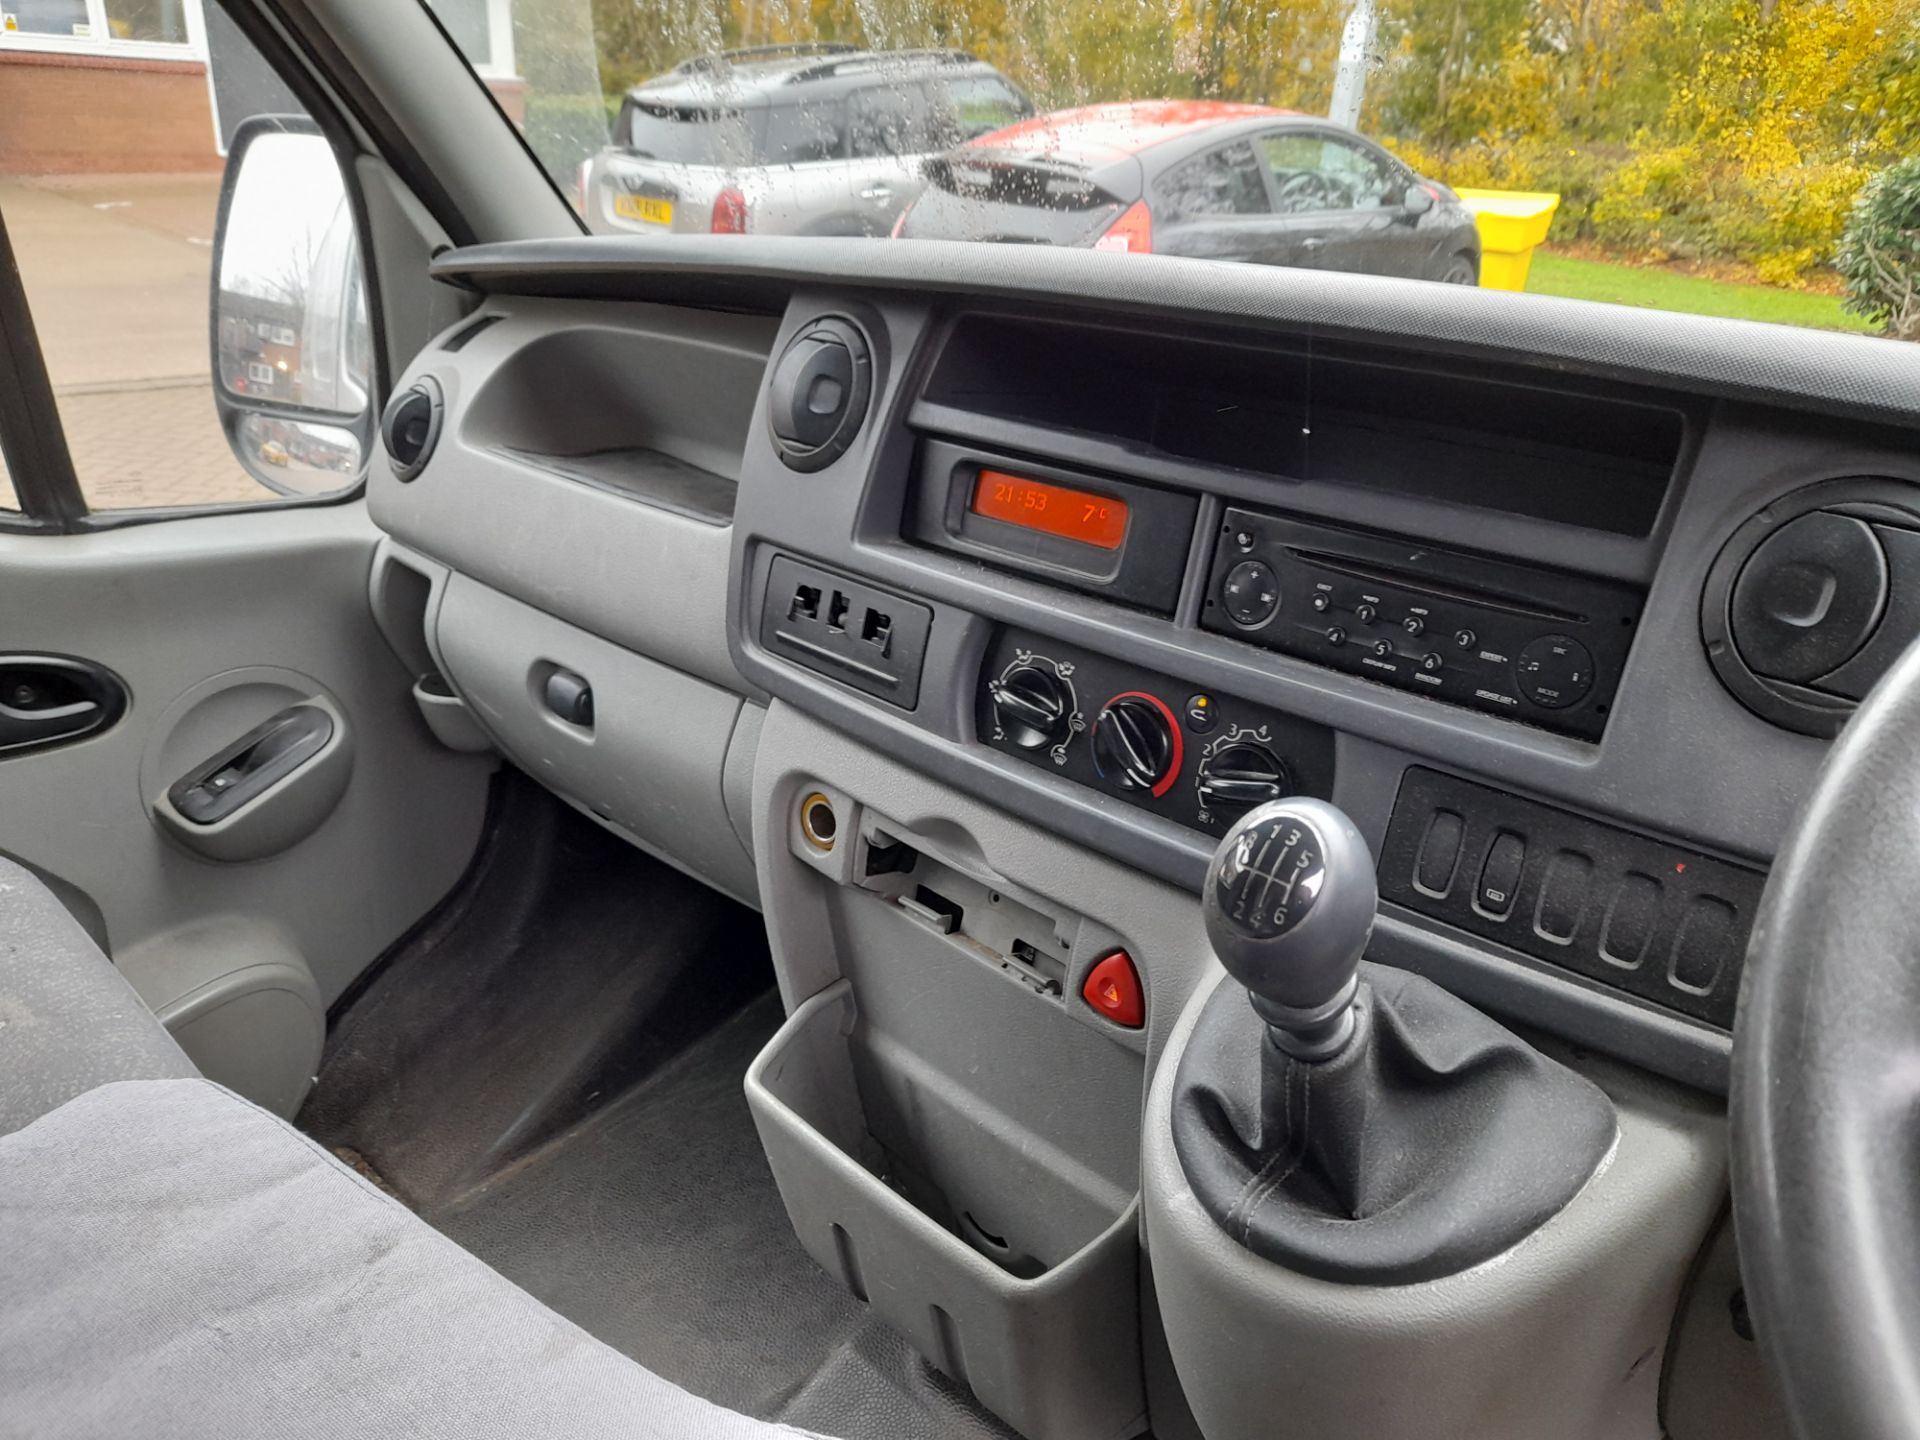 Nissan Interstar SE dci 120 Panel Van, Registration AU11 OGK, Mileage c187,000 miles, 1 x Key, V5 - Image 11 of 17